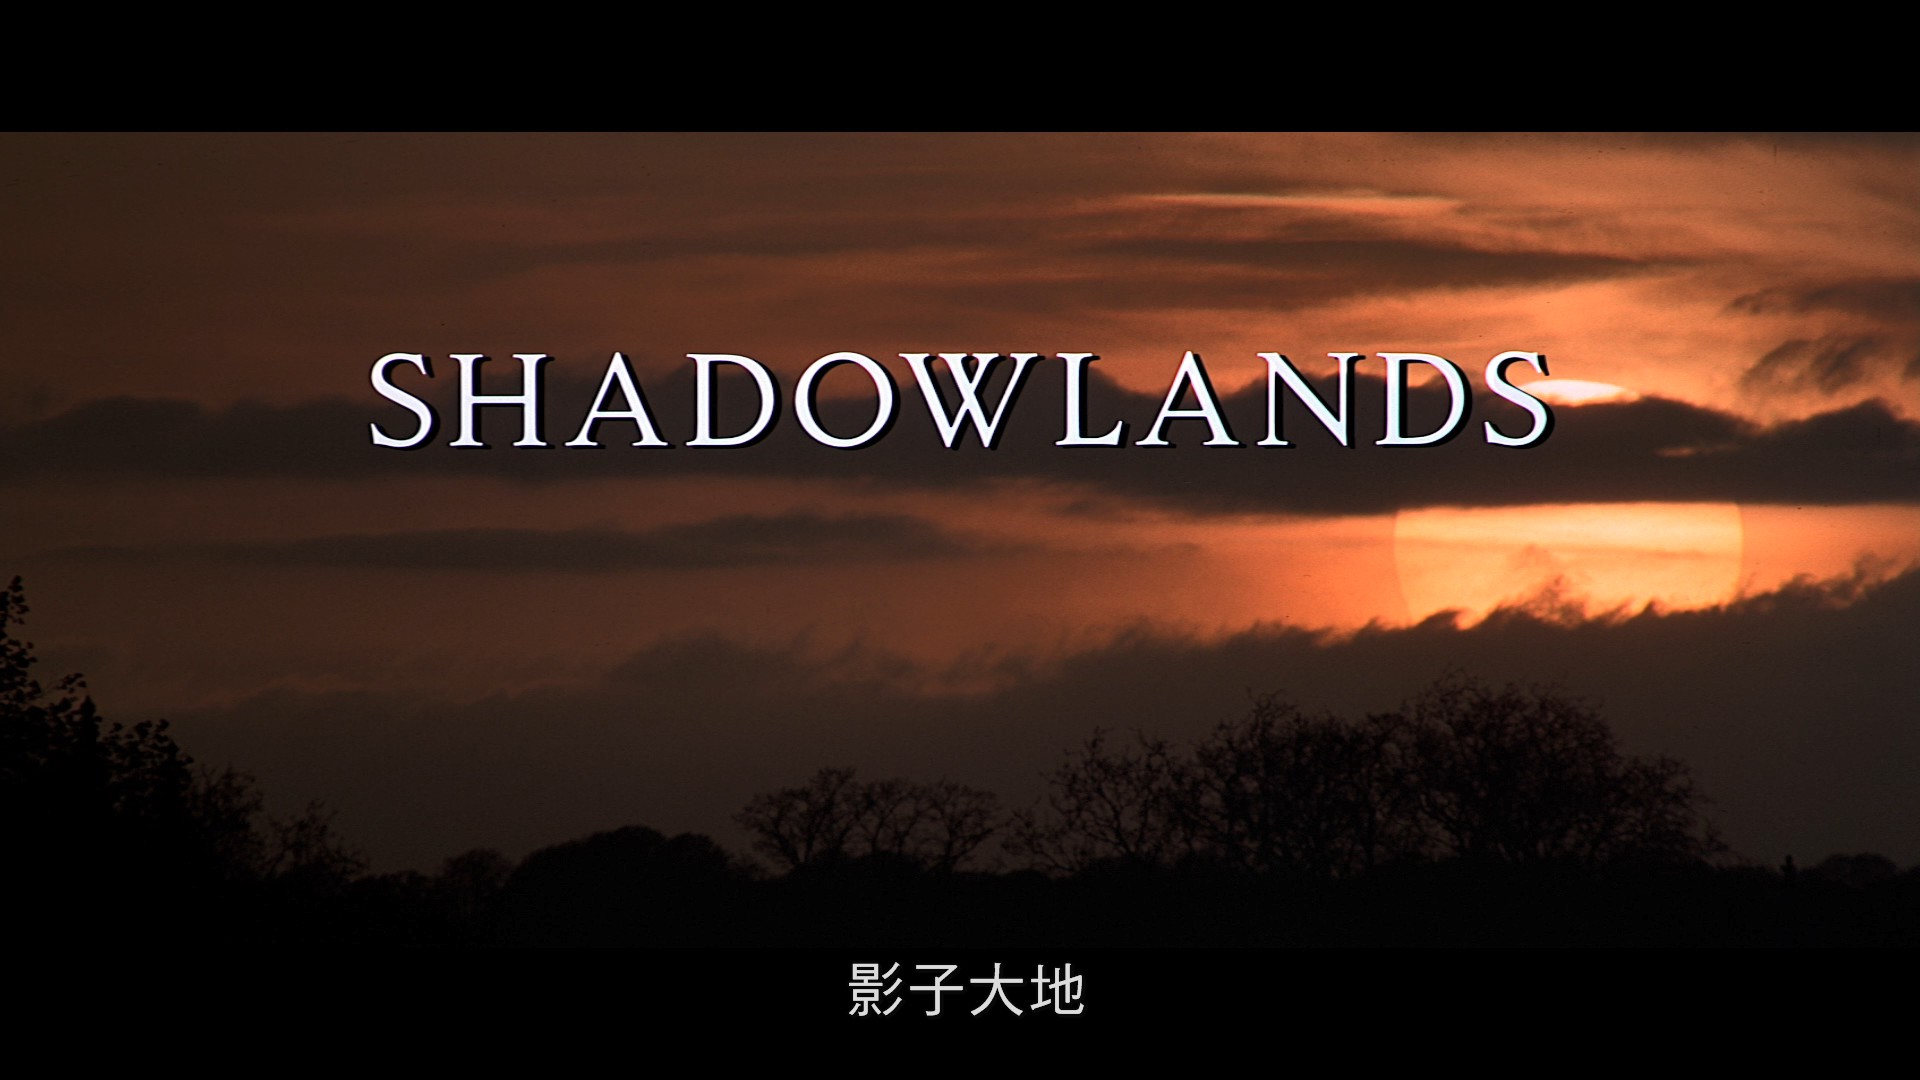 [ 影子大地 / 曾经深爱过 / 幻境 / 荫蔽之地 / 幽谷之旅 ]  [美版DIY正片.国语.简繁中字]  Shadowlands 1993 Blu-ray 1080p AVC DTS-HD MA 2.0-blucook#575@CHDBits  [38.93 GB]-2.jpg